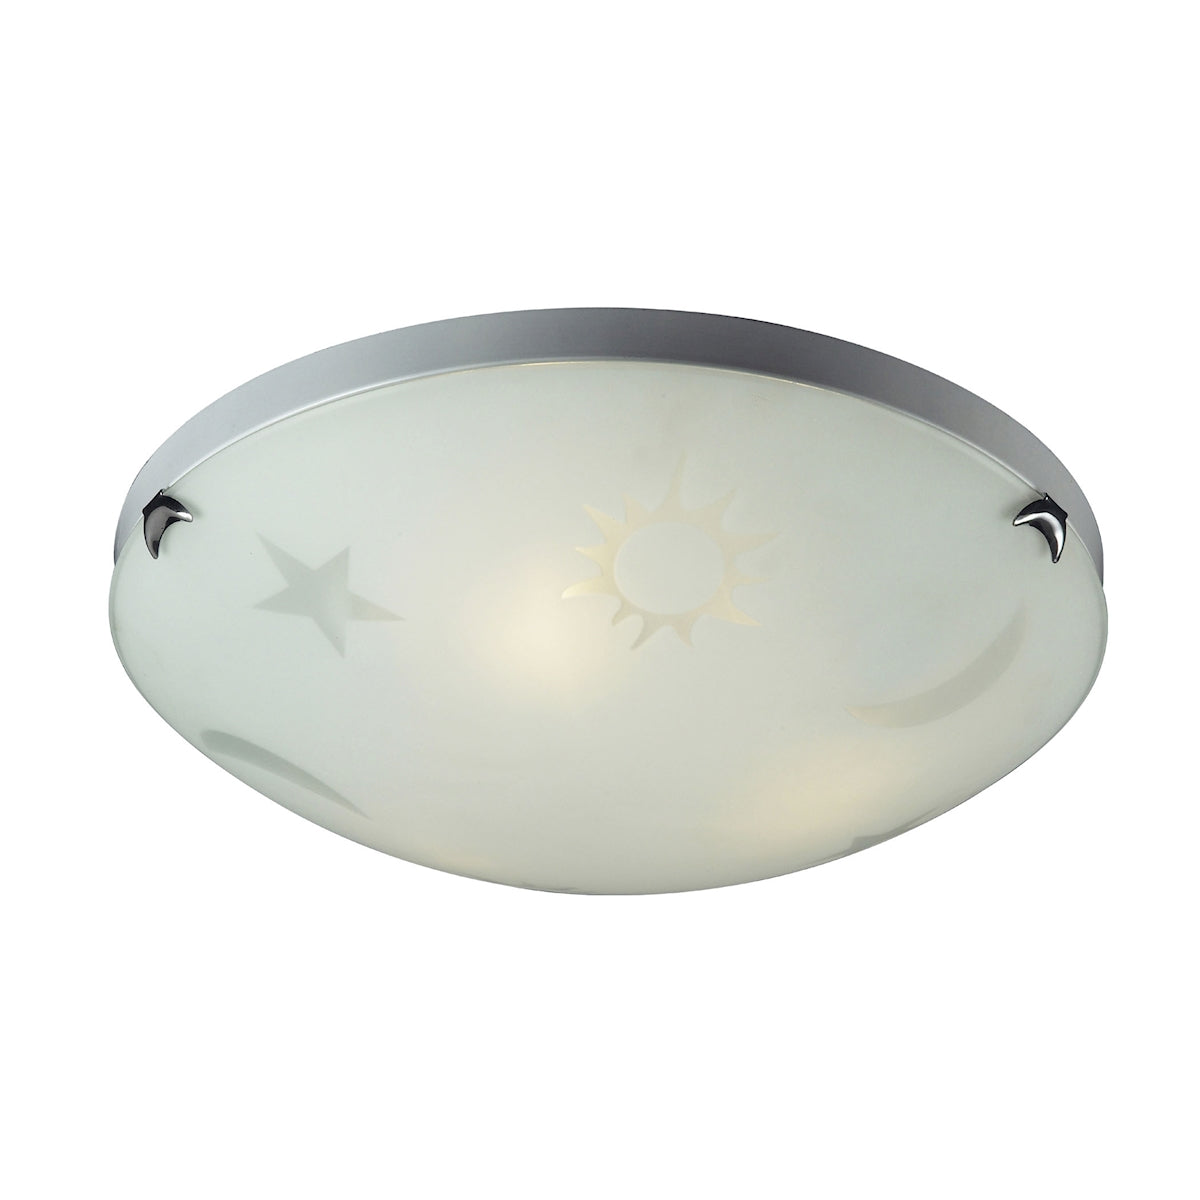 ELK Lighting 5088/3 Novelty 3-Light Flush Mount in Satin Nickel with Celestial Sky Motif on White Satin Glass